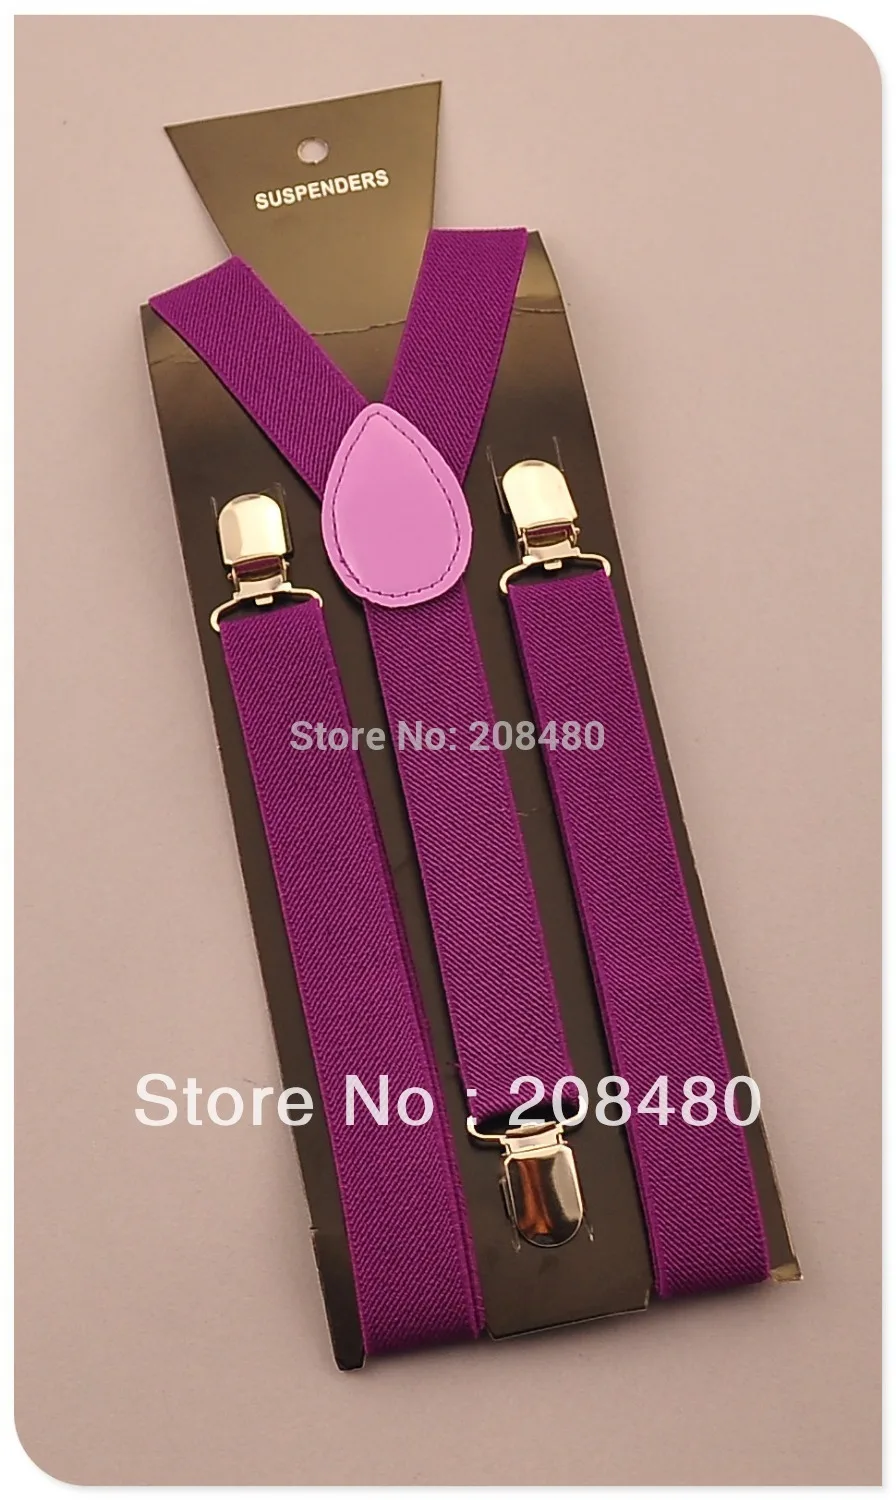 shipping-2.5cm широкая "темно-фиолетовая" Серьга унисекс-на подтяжках эластичные тонкие Подтяжки Y-back Подтяжки оптом и в розницу